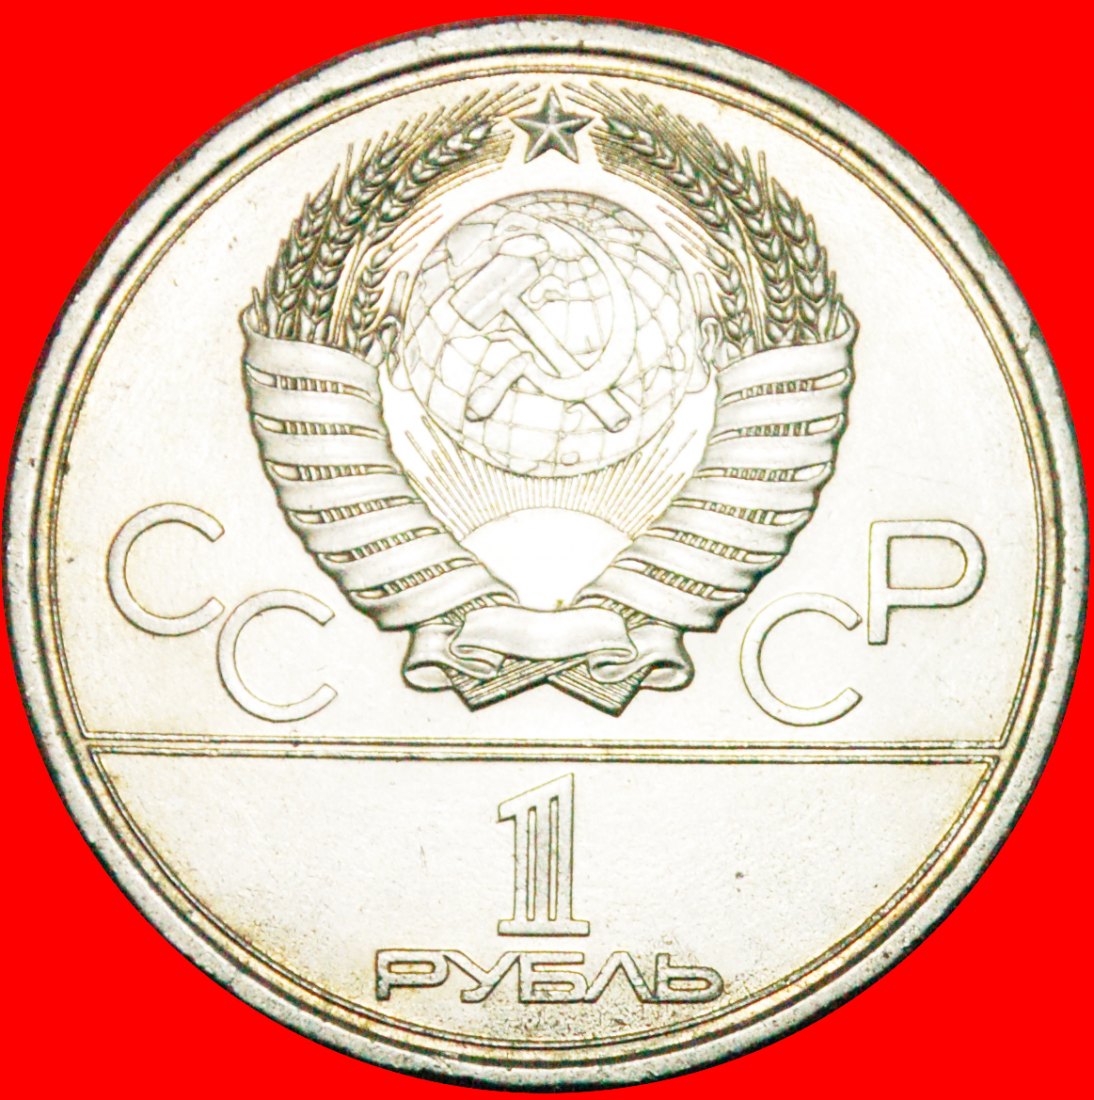  § OLYMPIADE 1980: UdSSR (früher die russland) ★ 1 RUBEL 1979! POSTAMENT VON STALIN (1878-1953)!   